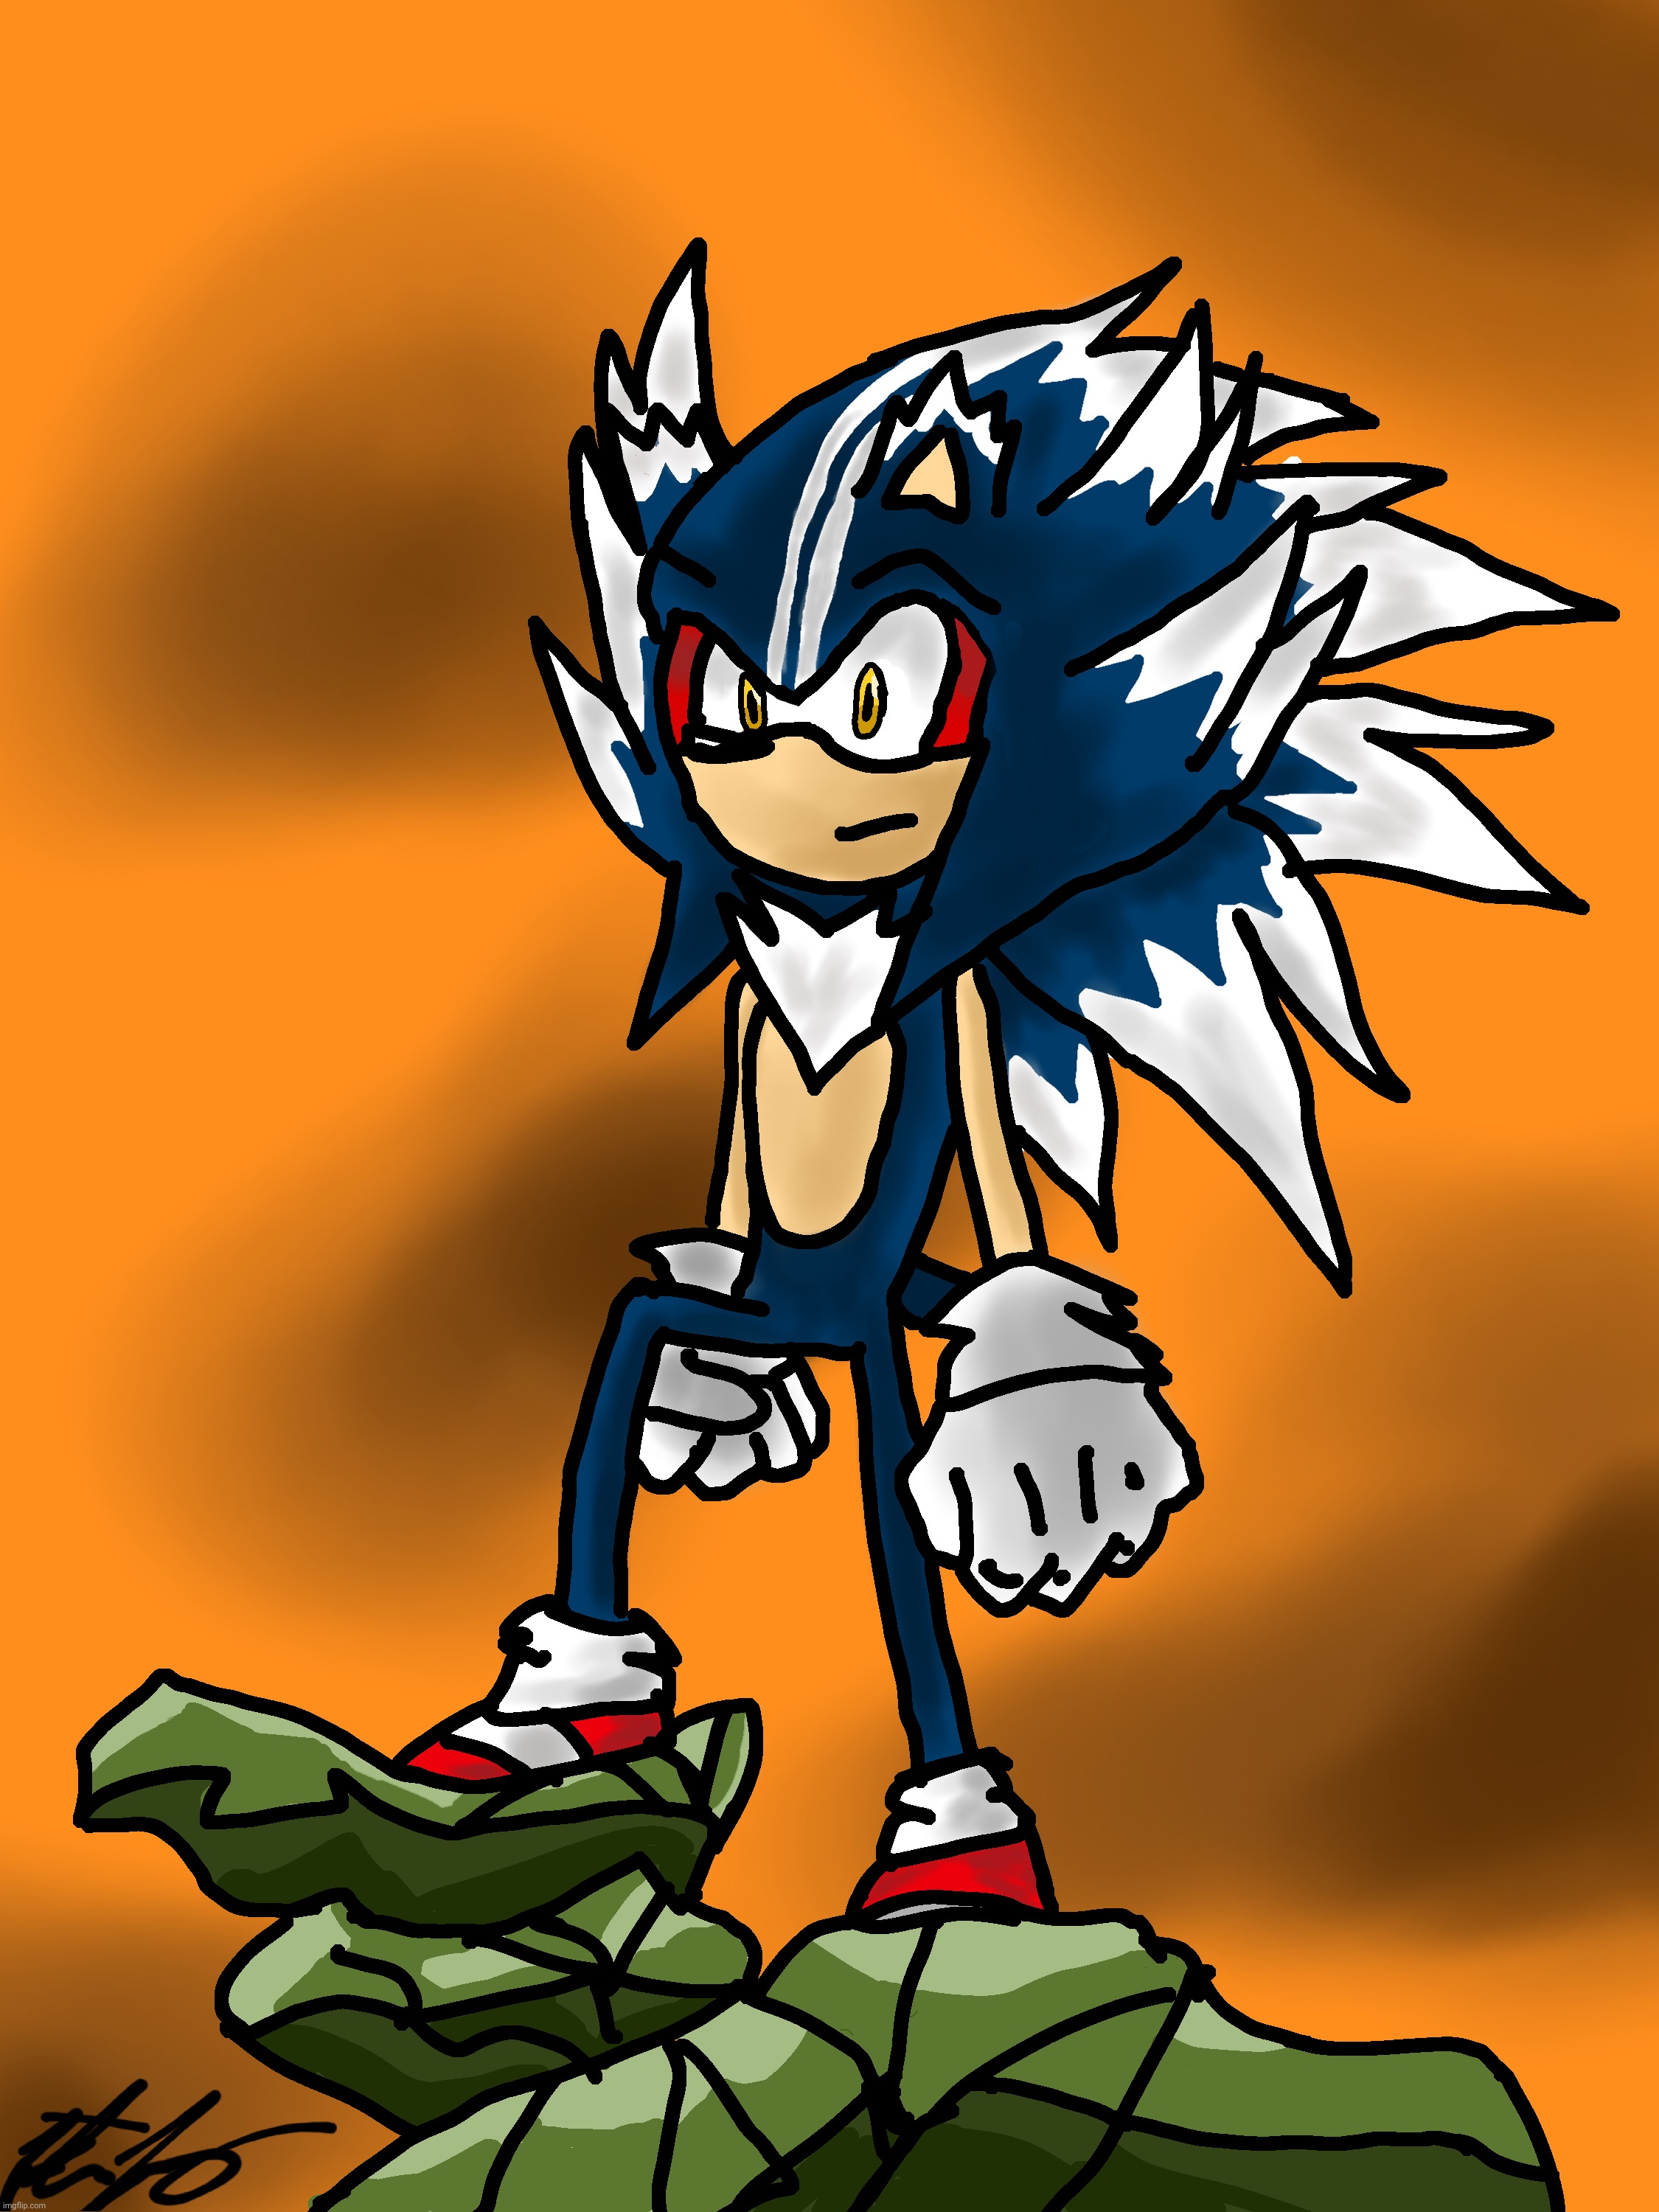 Super Sonic fase 4